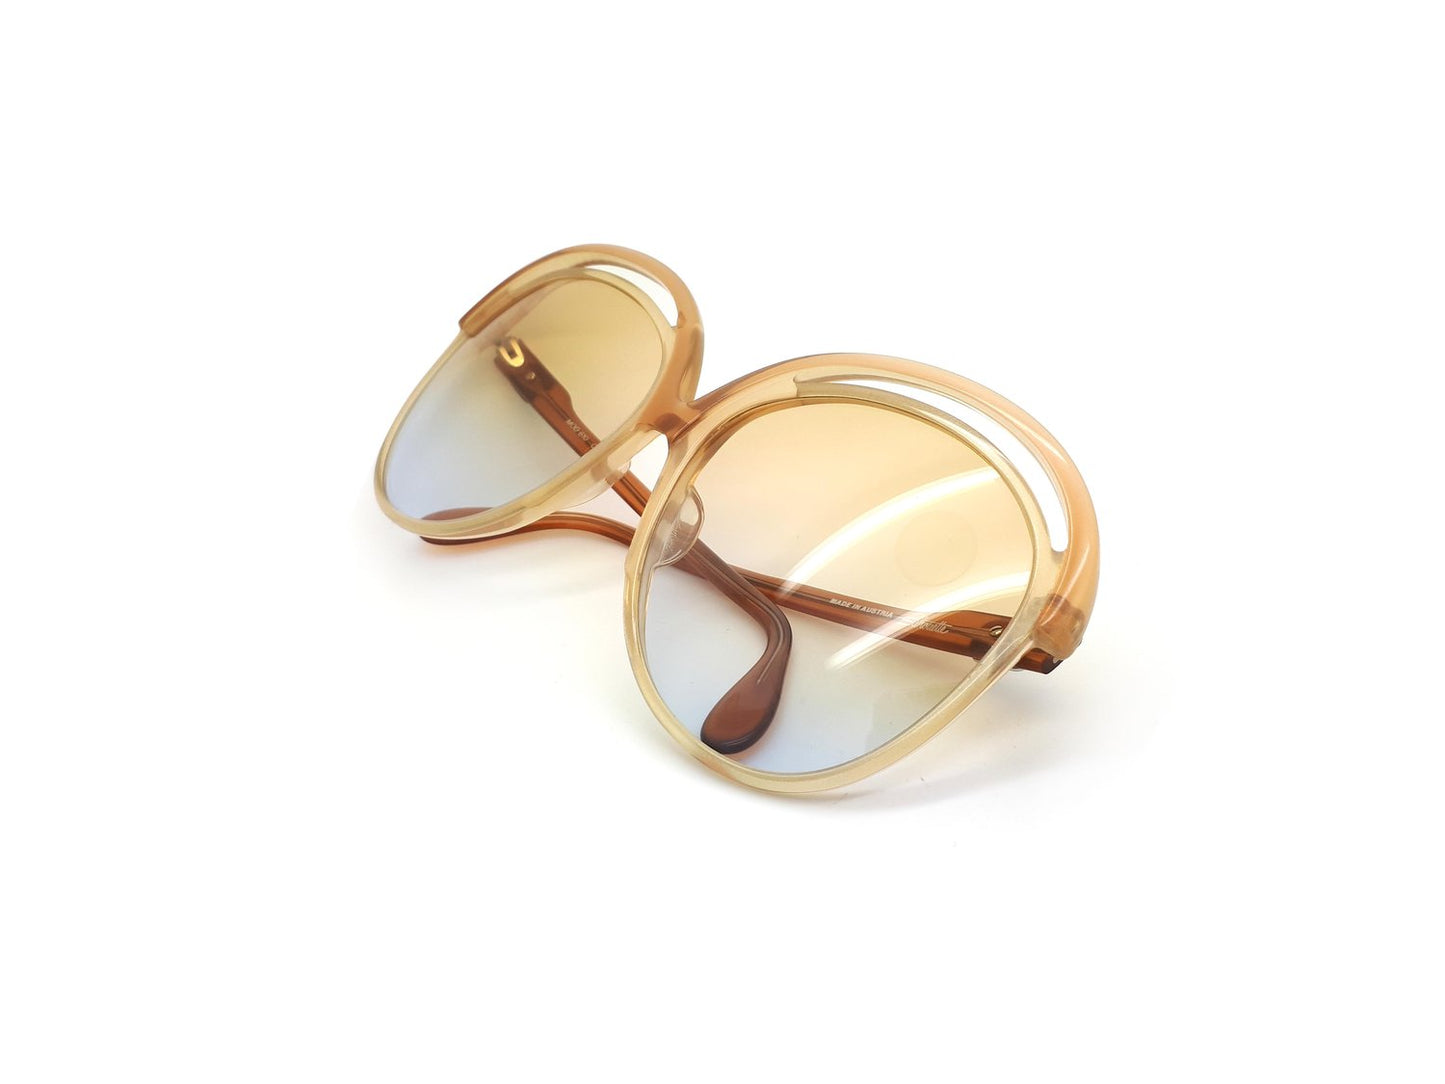 Silhouette Double Top Cream Sunglasses